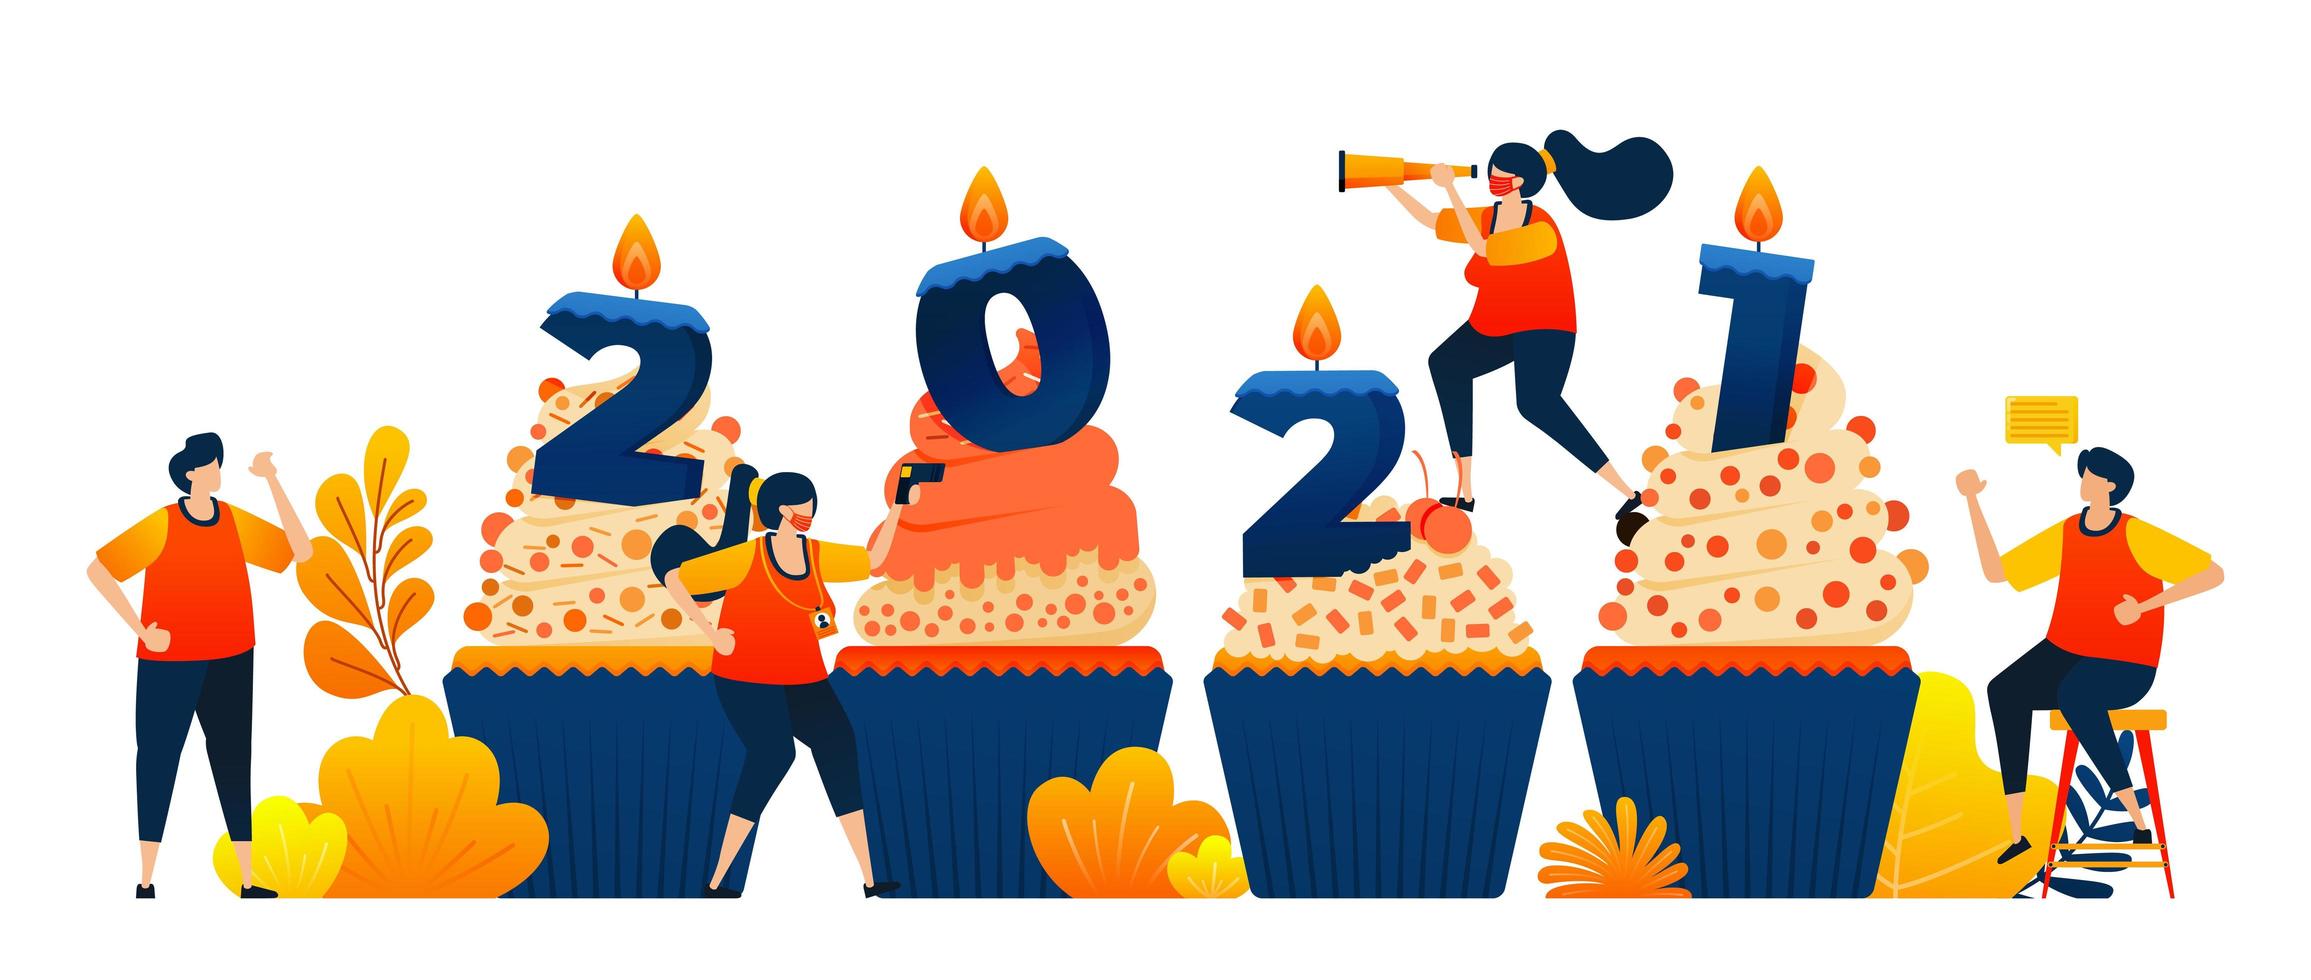 contagem regressiva de 2020 a 2021 com tema de cupcakes para celebrar o ano novo com vela. o conceito de ilustração vetorial pode ser usado para página de destino, modelo, ui ux, web, aplicativo móvel, cartaz, banner, site vetor